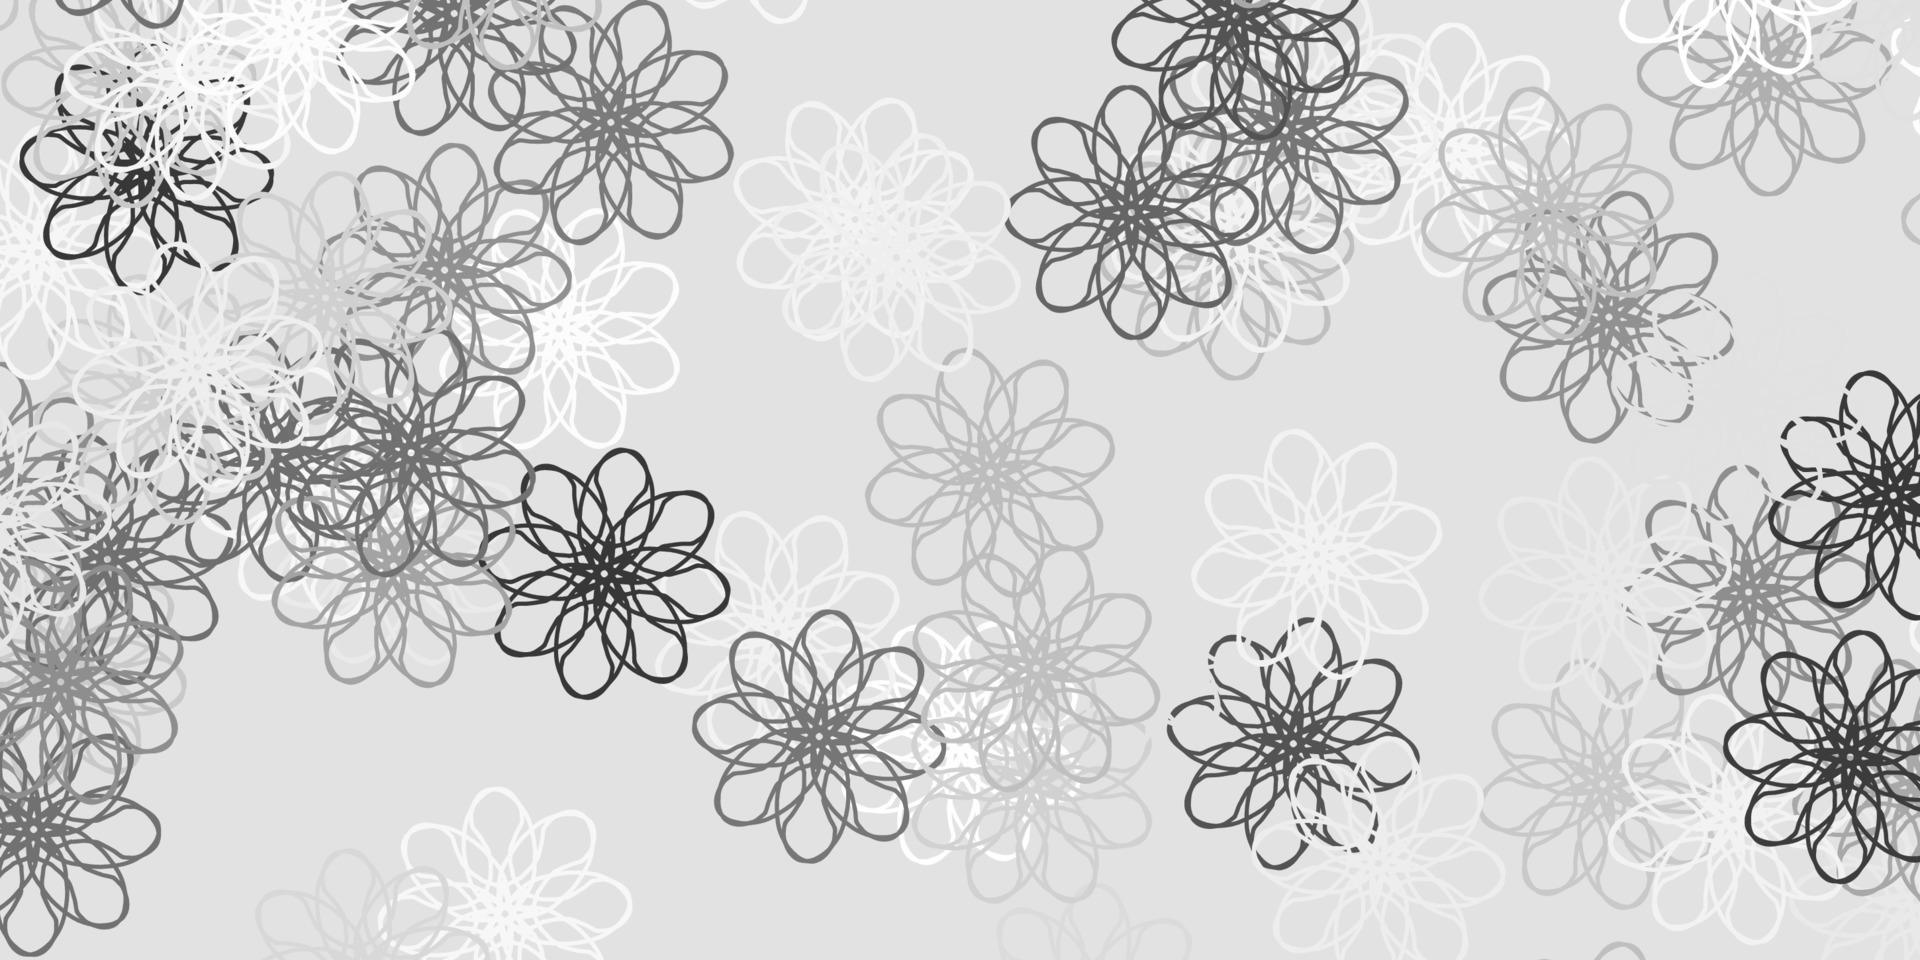 ljusgrå vektor doodle mall med blommor.